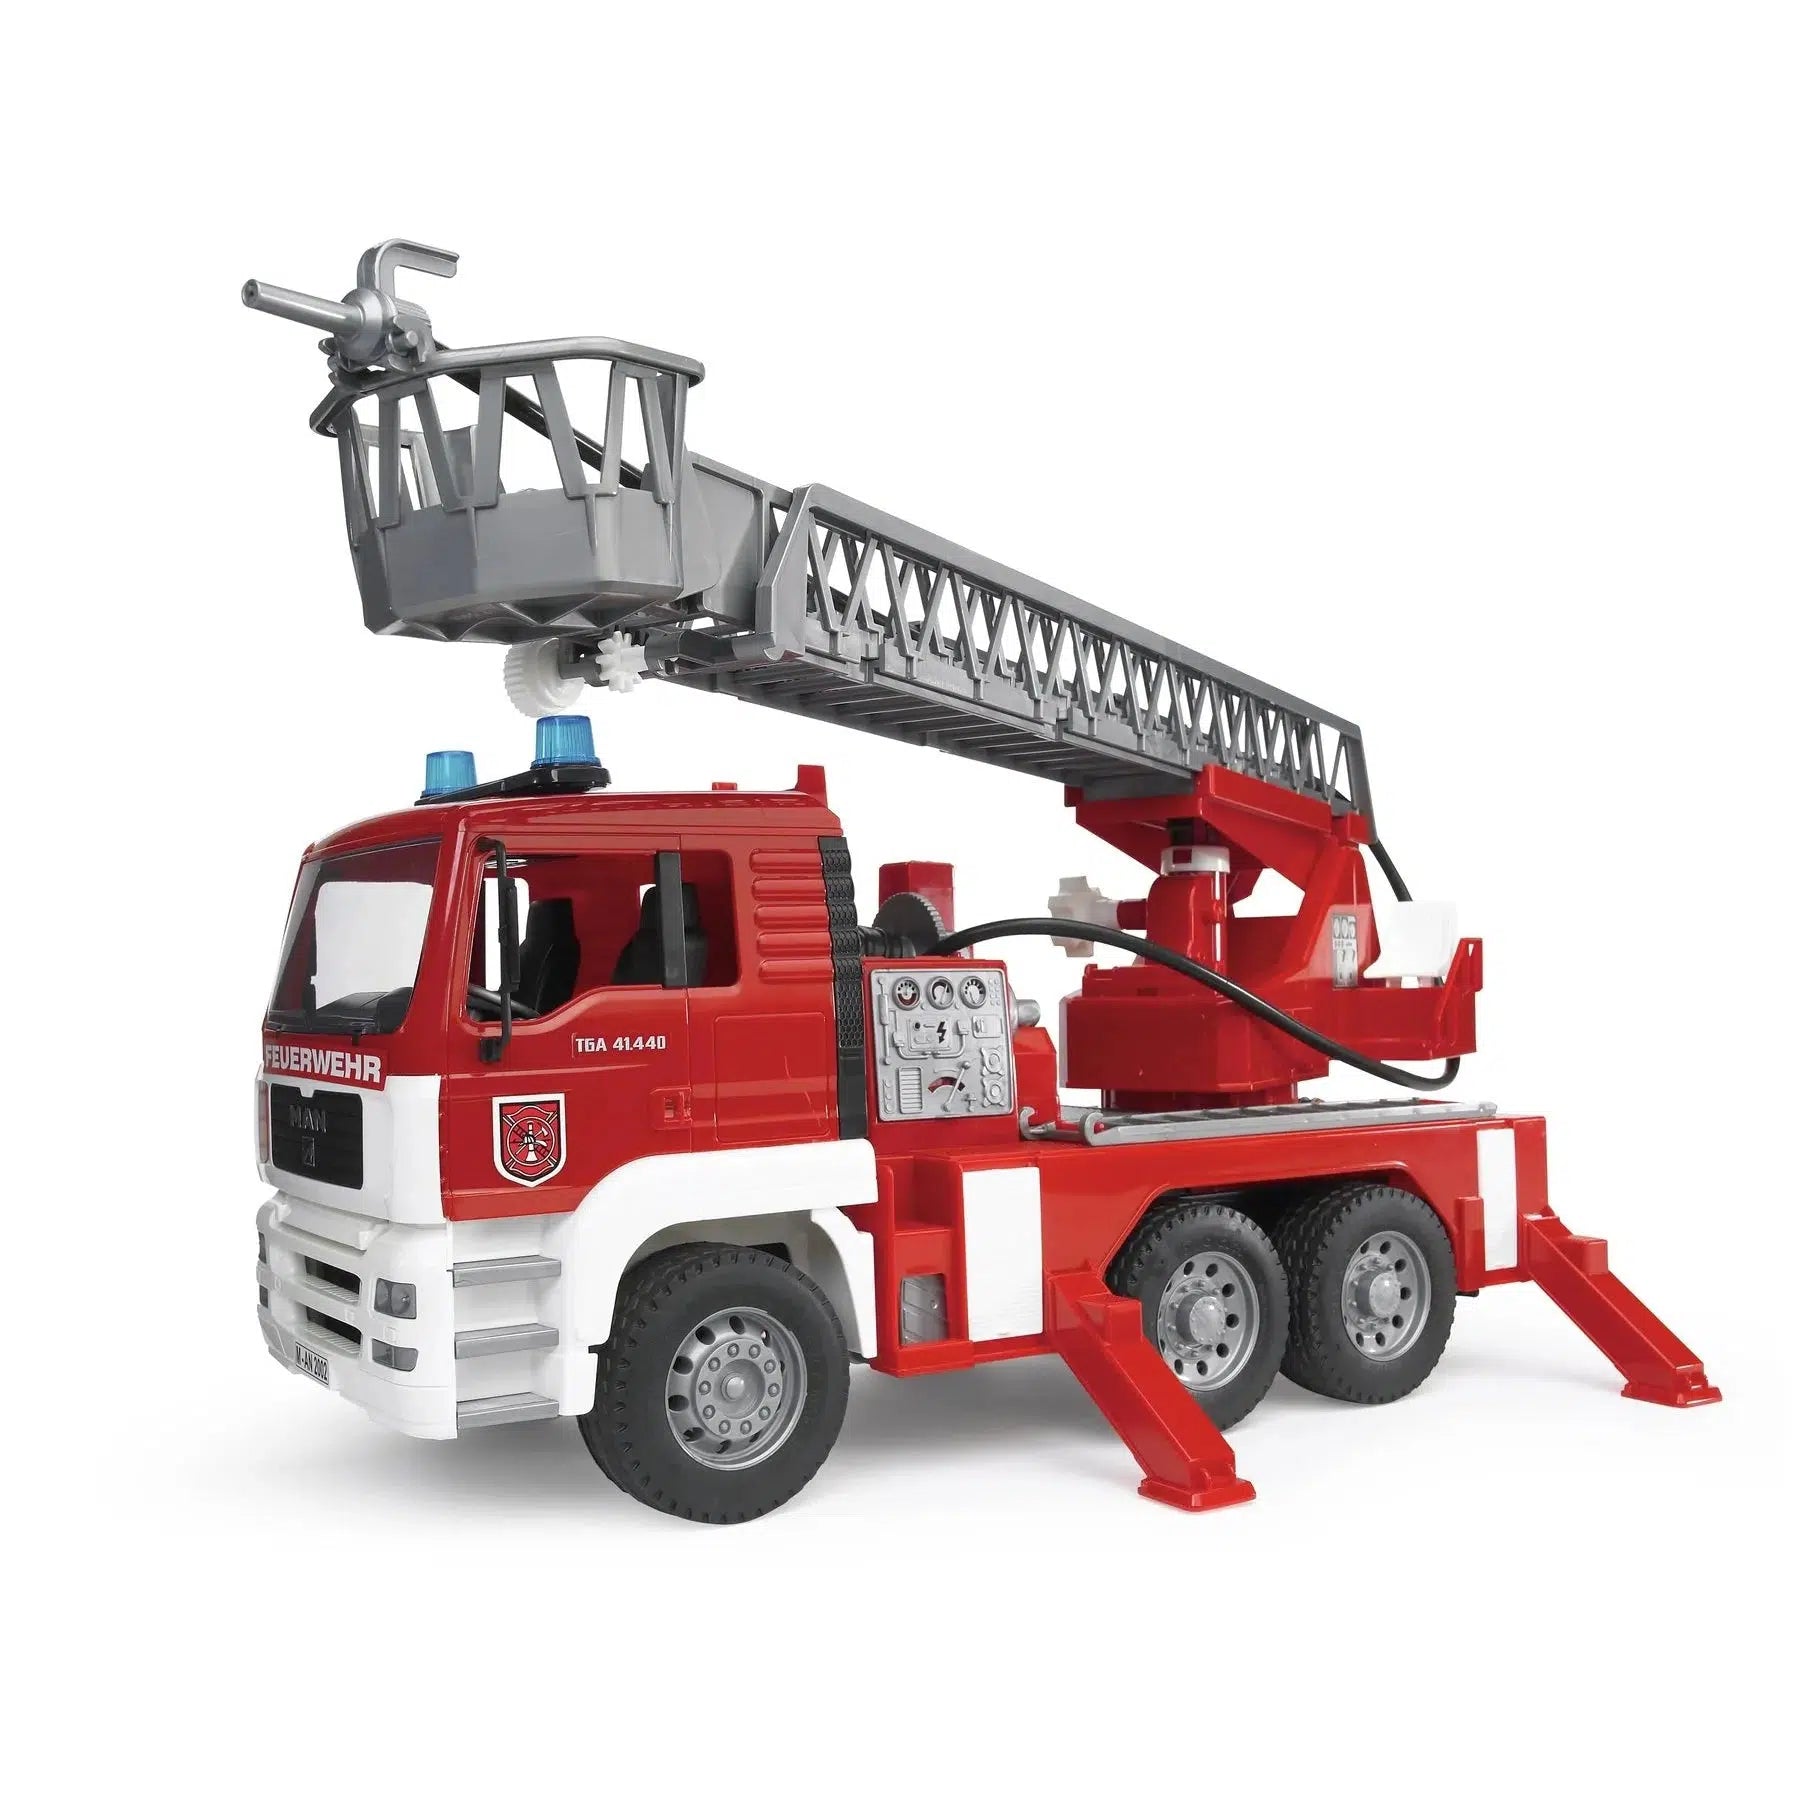 1.2.3. Ladder Unit Fire Truck